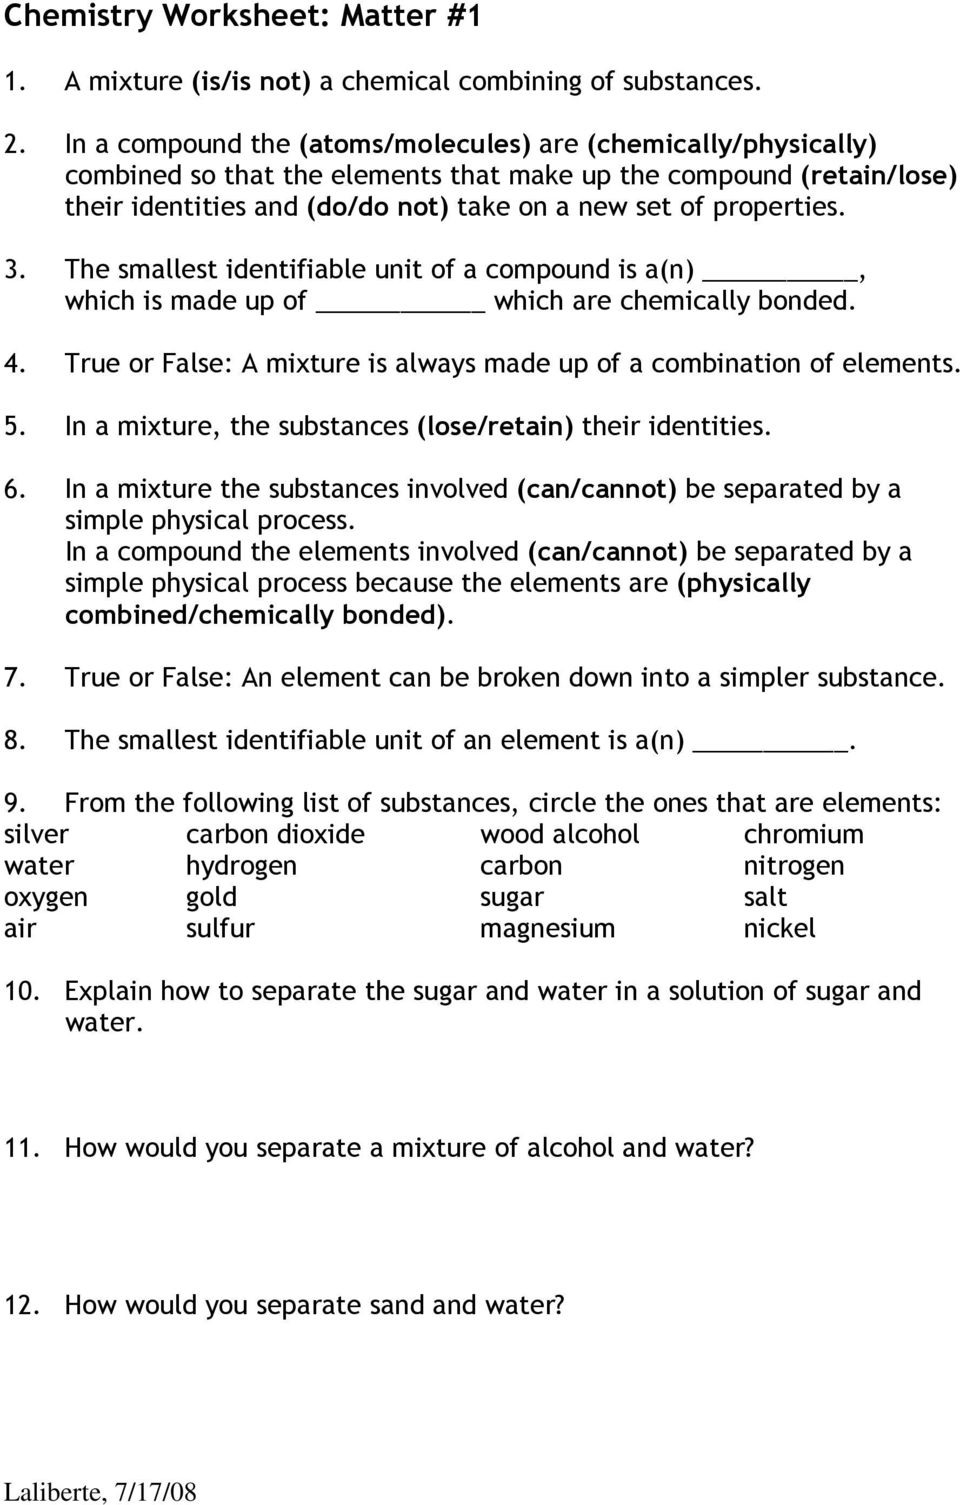 Chemistry Worksheet Matter 1  Pdf